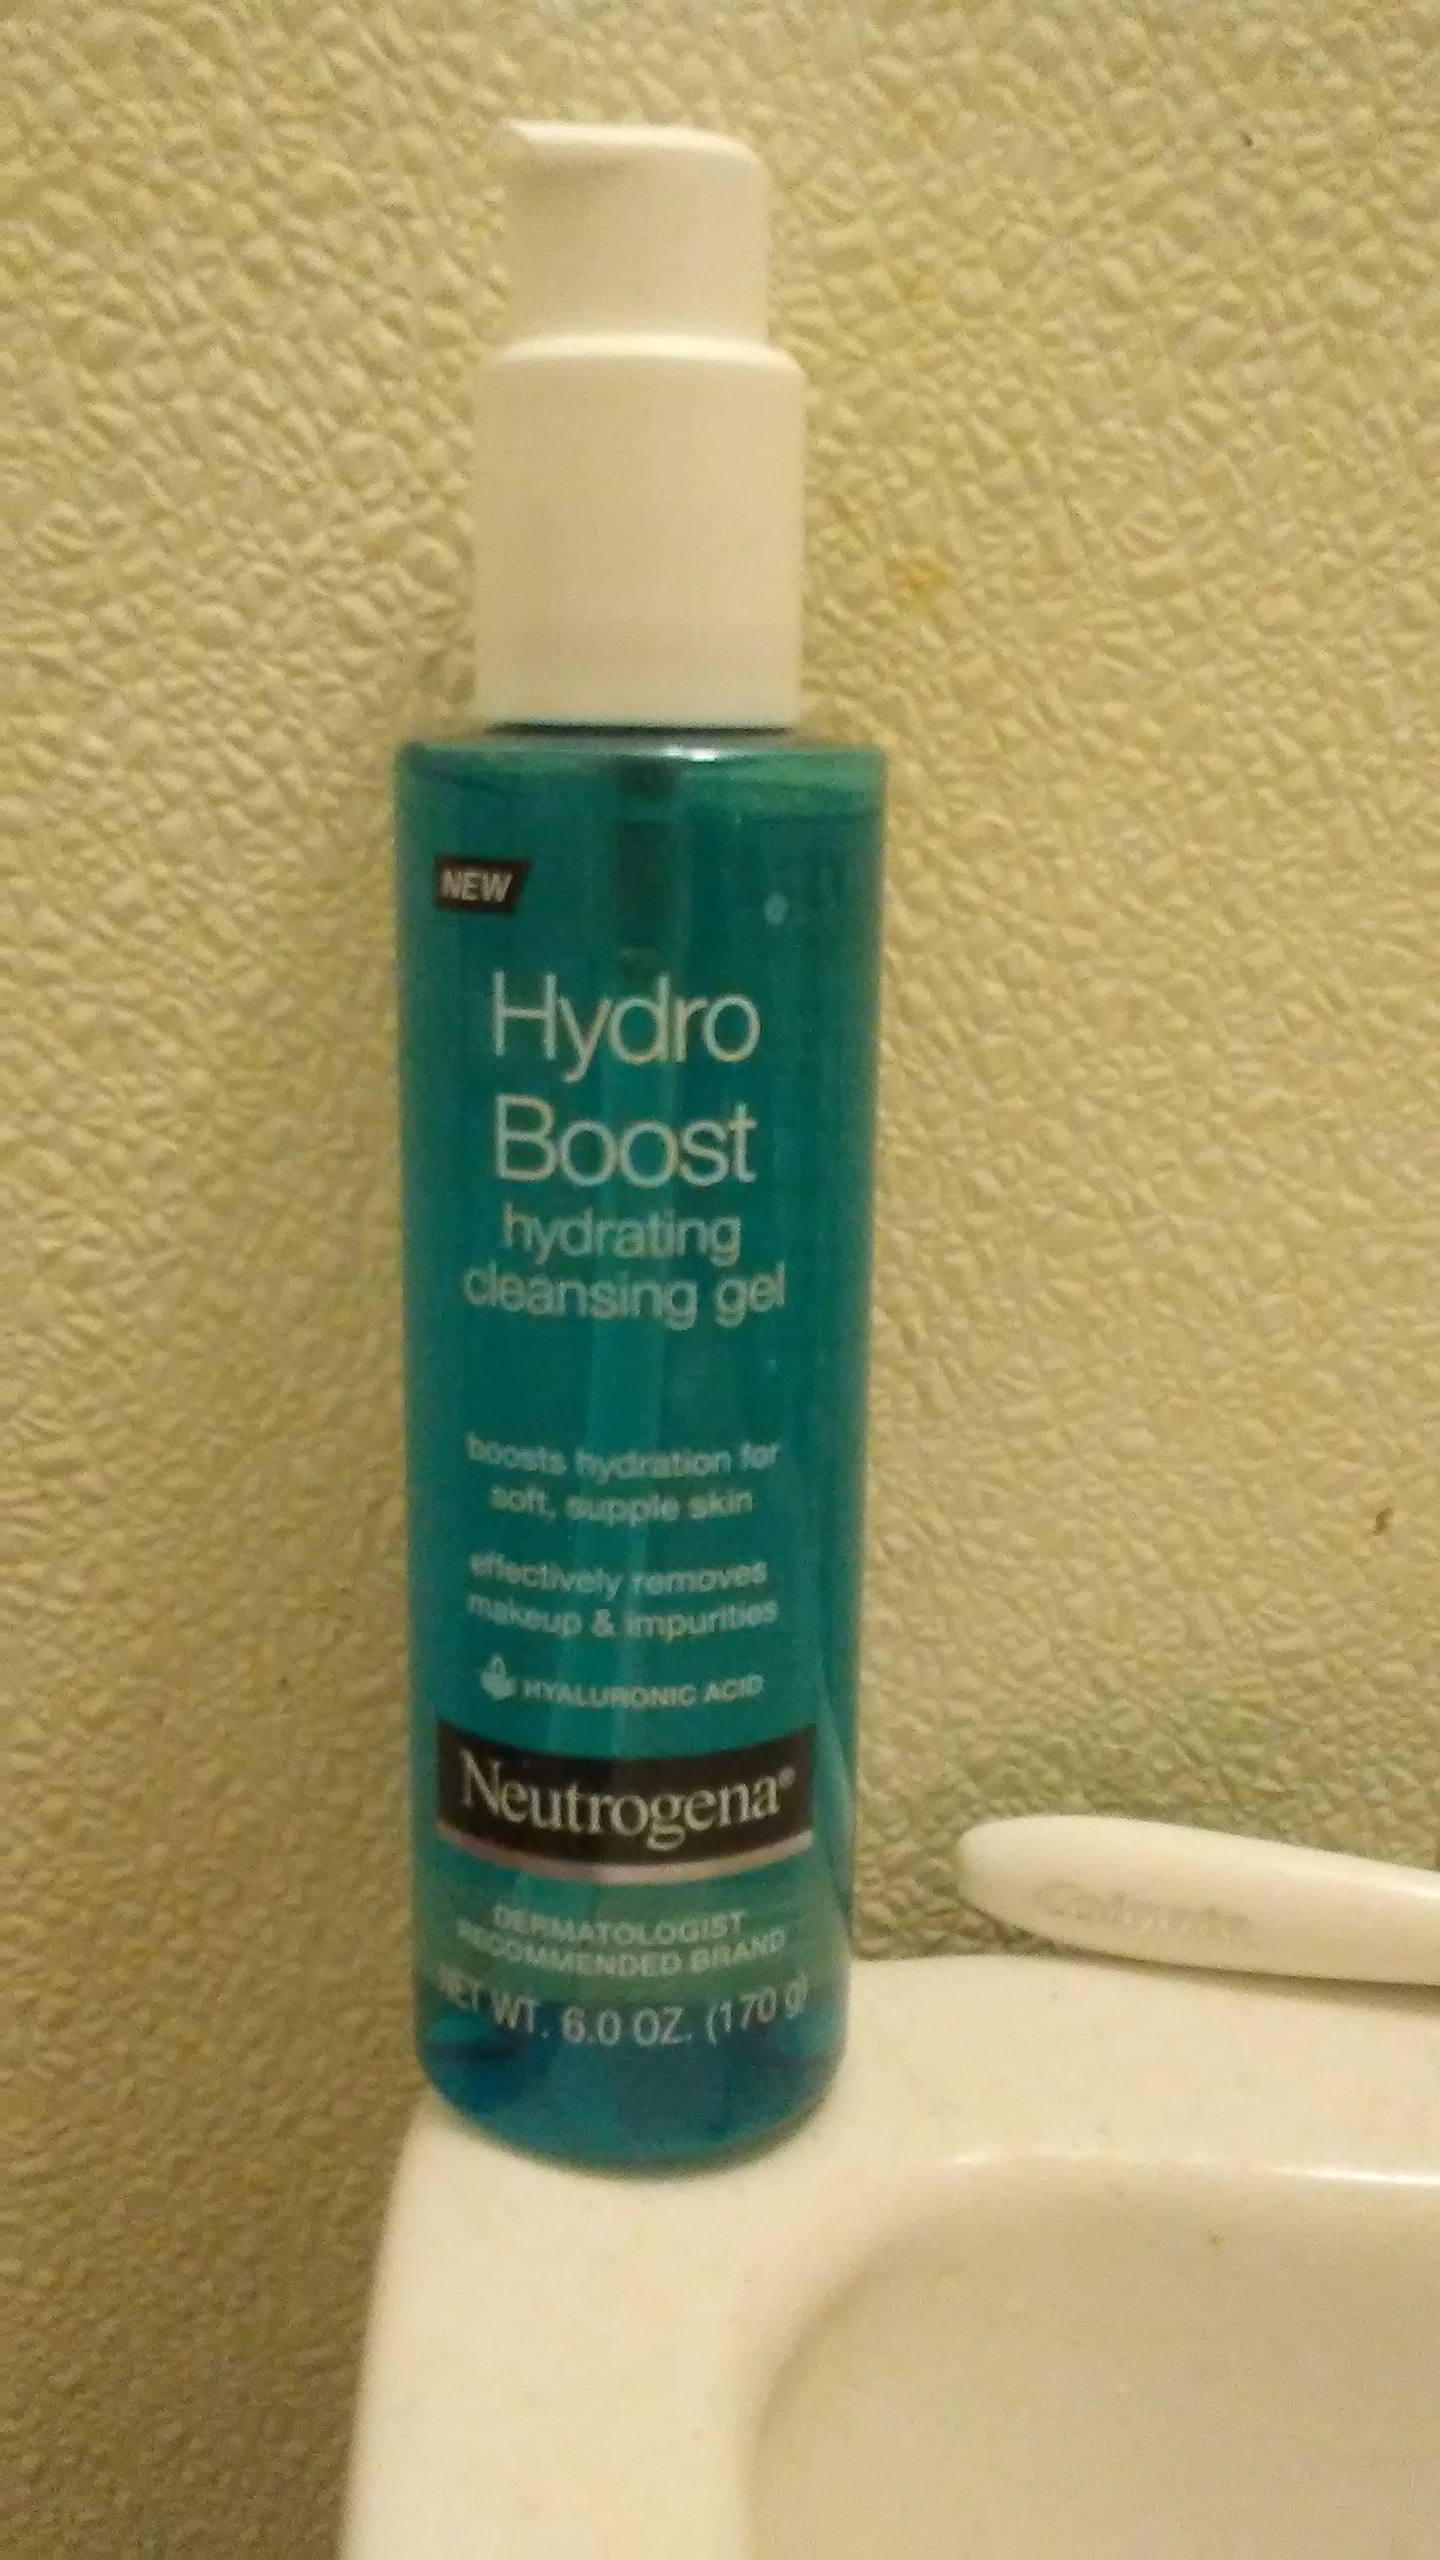 A bottle of Neutrogena Hydro Boost Cleansing Gel